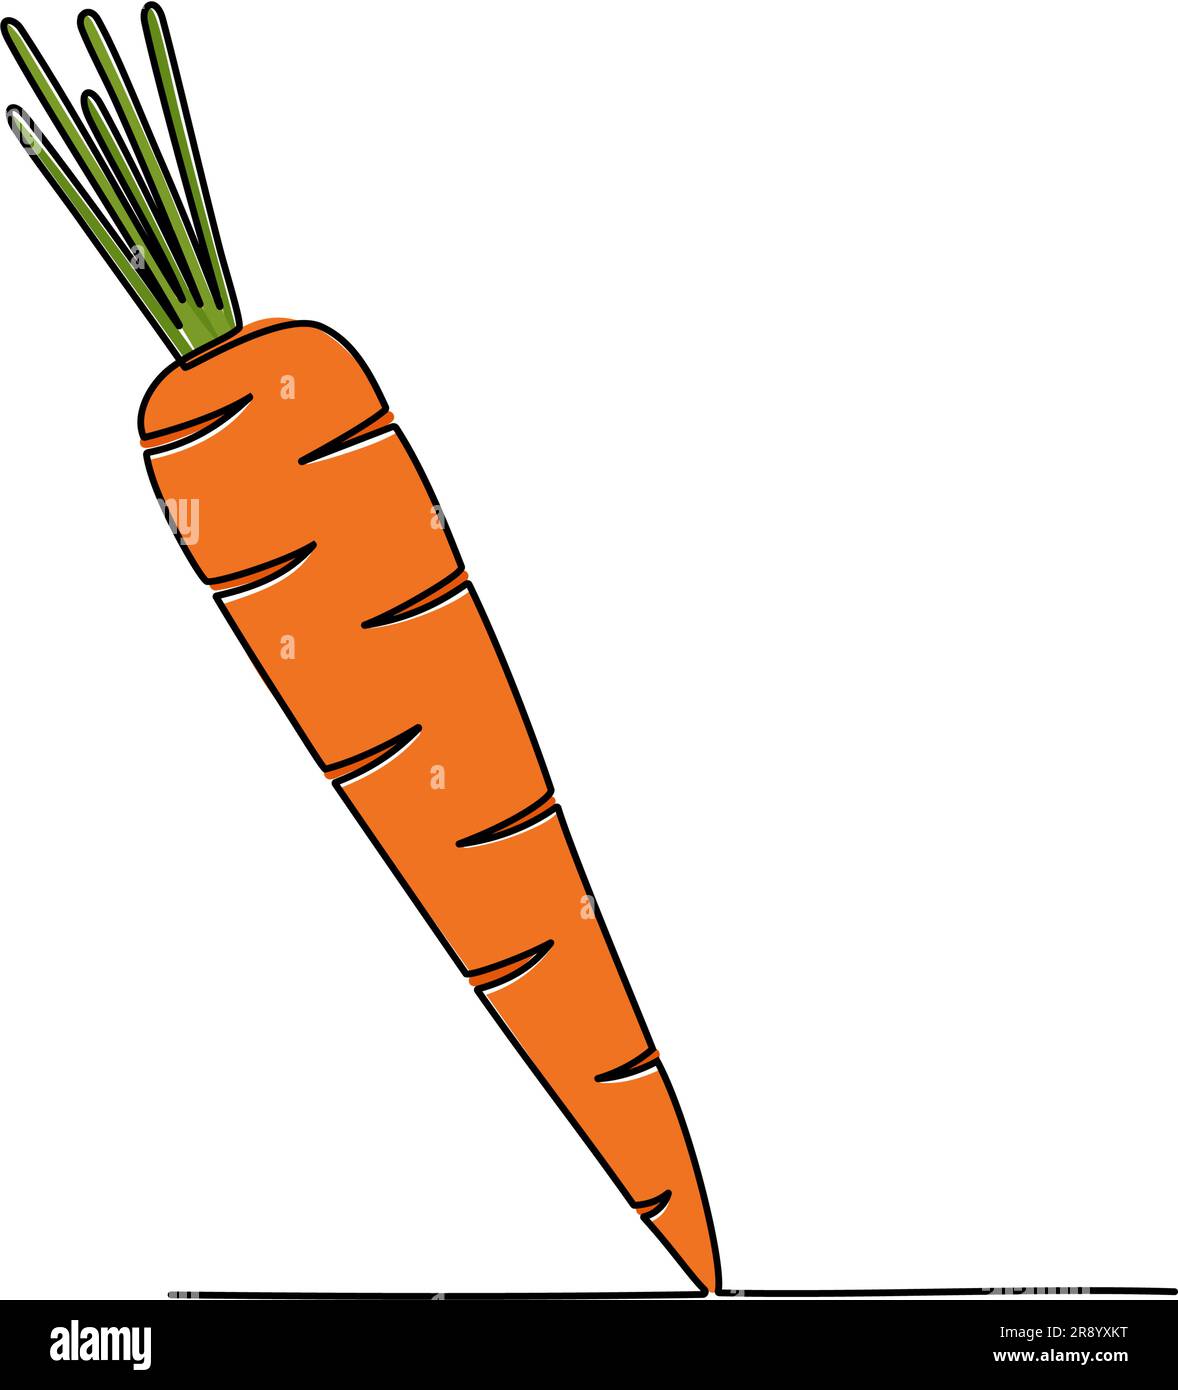 Durchgehende Linienzeichnung von Karotten. Vektordarstellung Stock Vektor